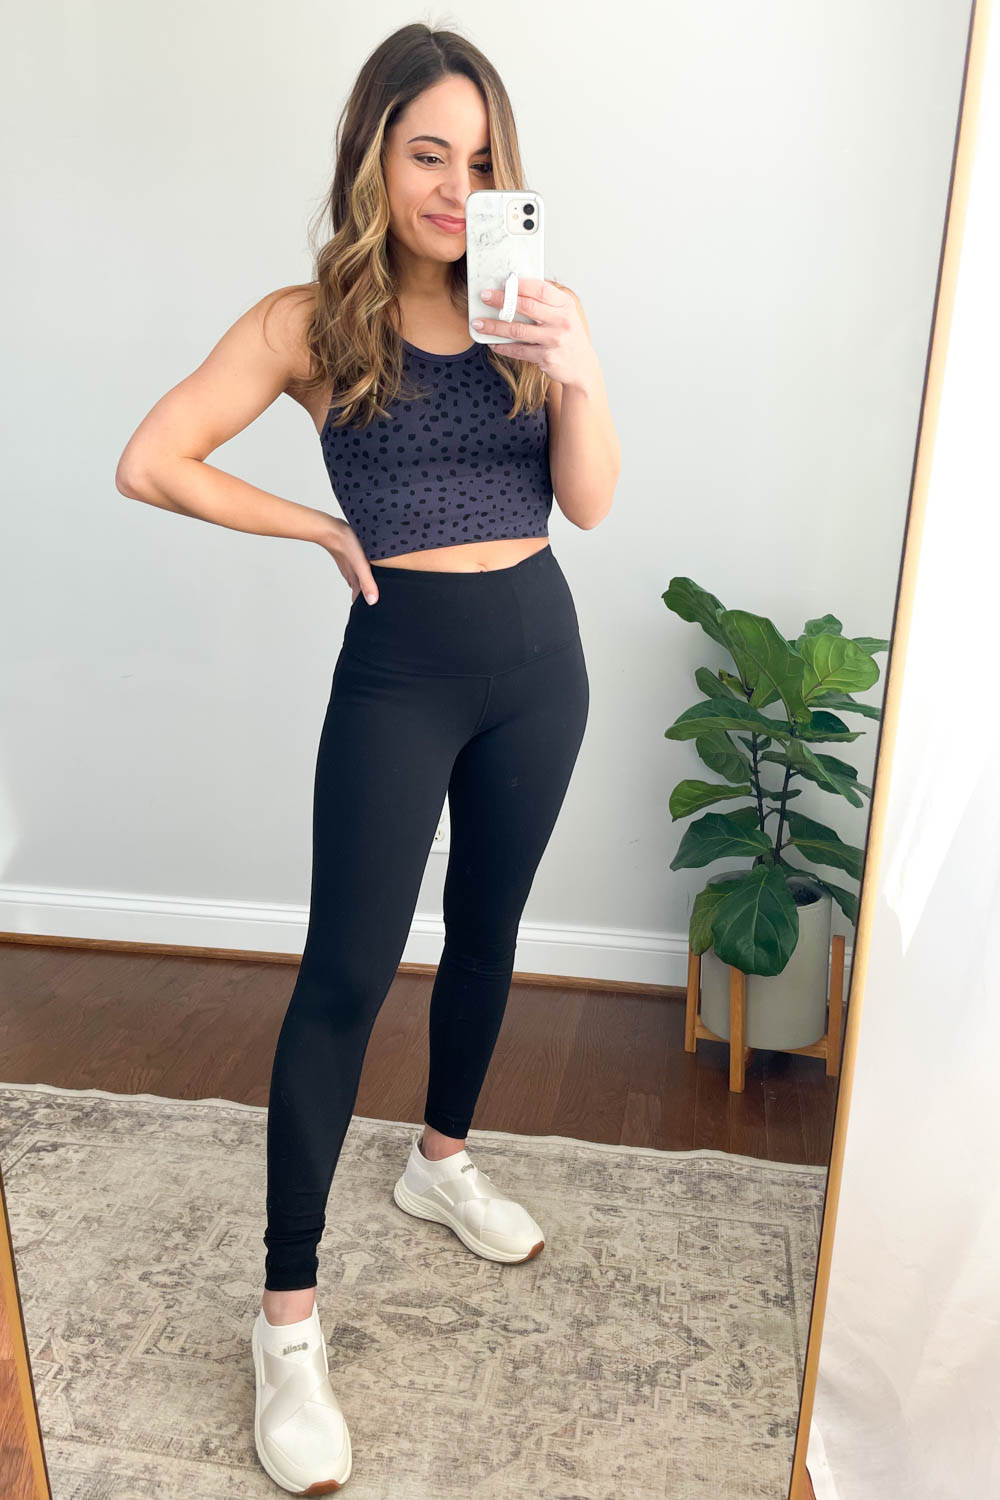 Zella Plus Size Workout Clothes & Activewear